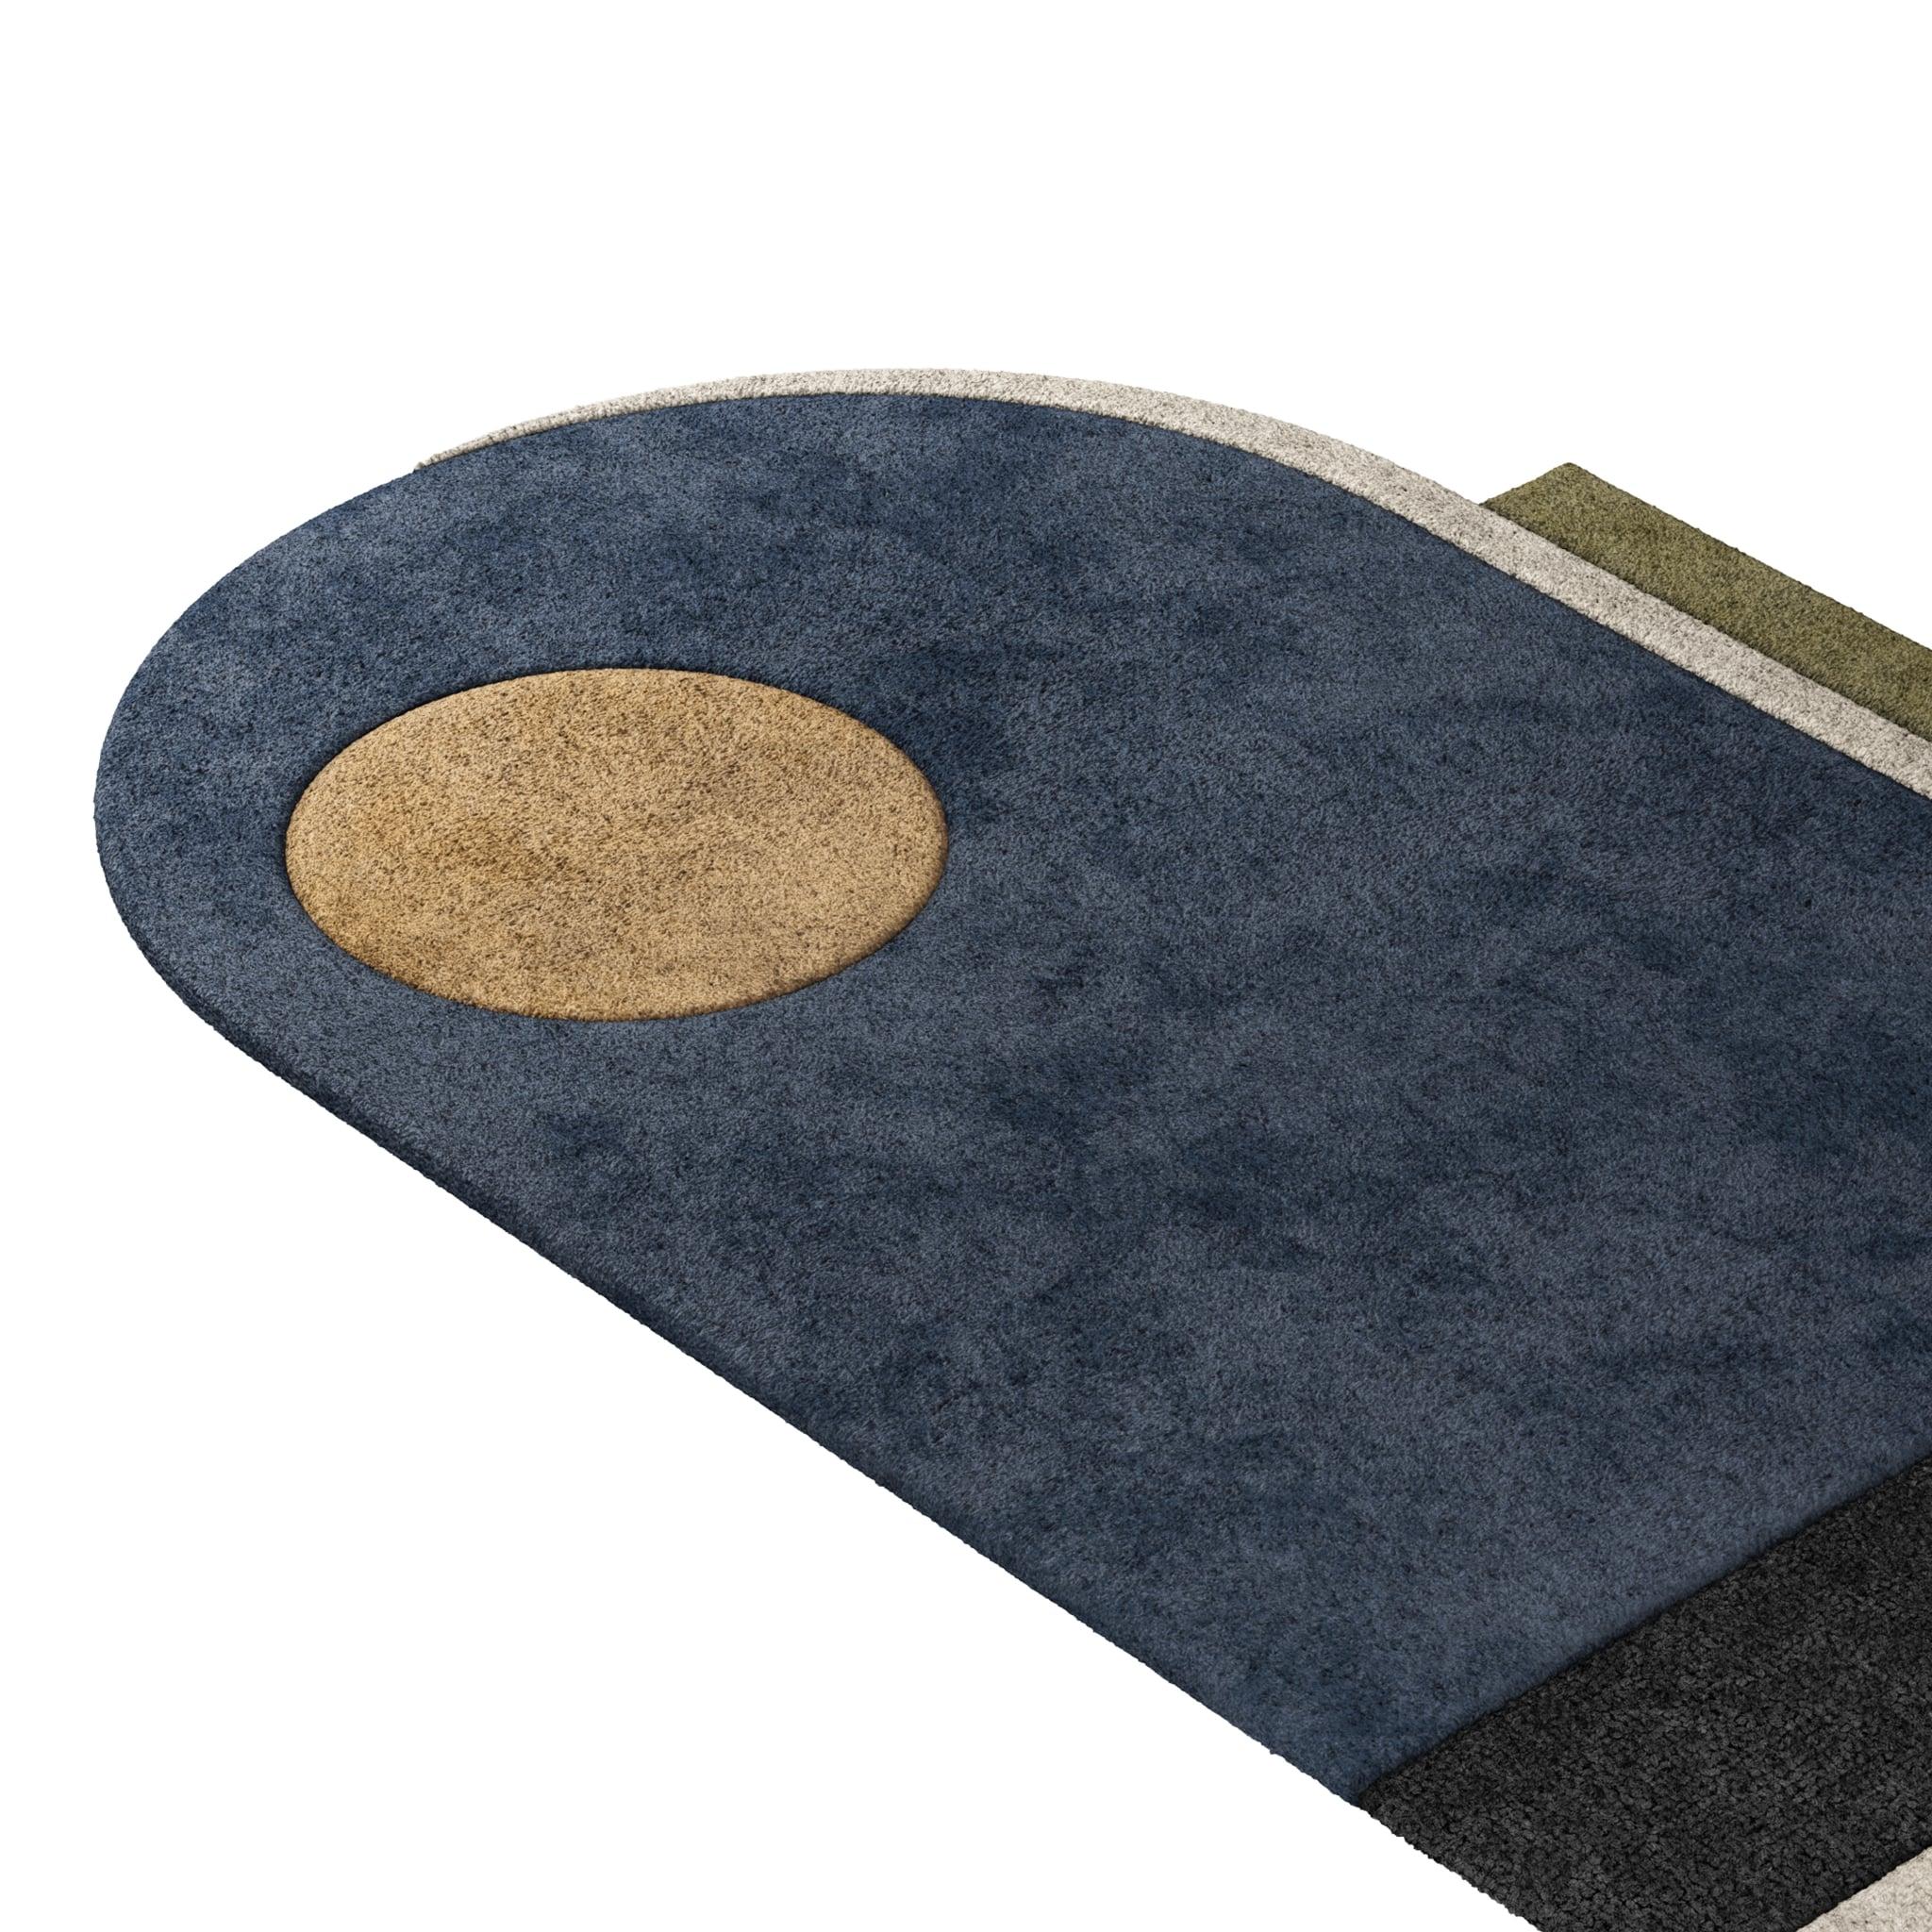 Tapis Retro #018 ist ein Retro-Teppich mit einer unregelmäßigen Form und zeitlosen Farben. Inspiriert von architektonischen Linien, setzt dieser geometrische Teppich in jedem Wohnbereich ein Zeichen. 

Der Retro-Teppich in Beige, Blau und Grün mit